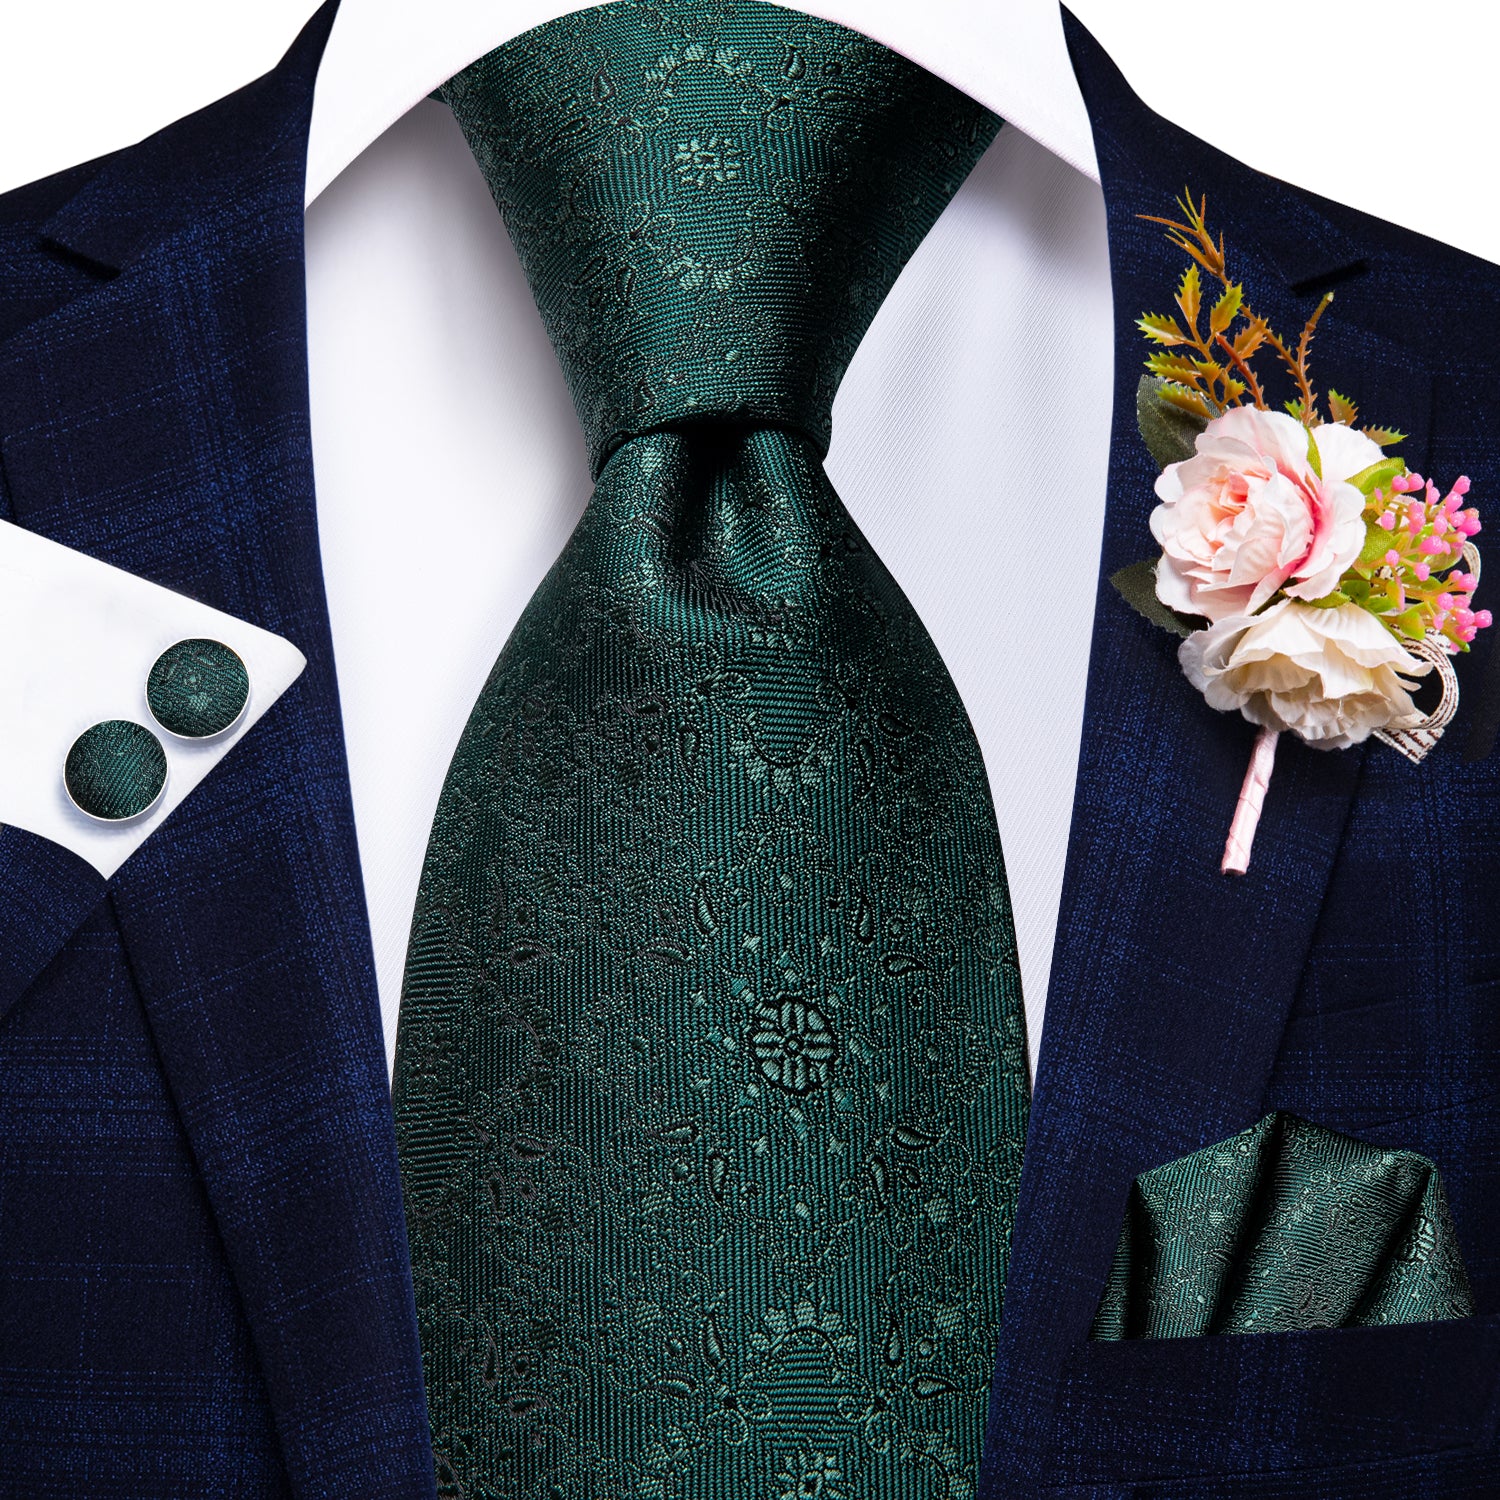 Dark Green Floral Tie Handkerchief Cufflinks Set with Wedding Brooch